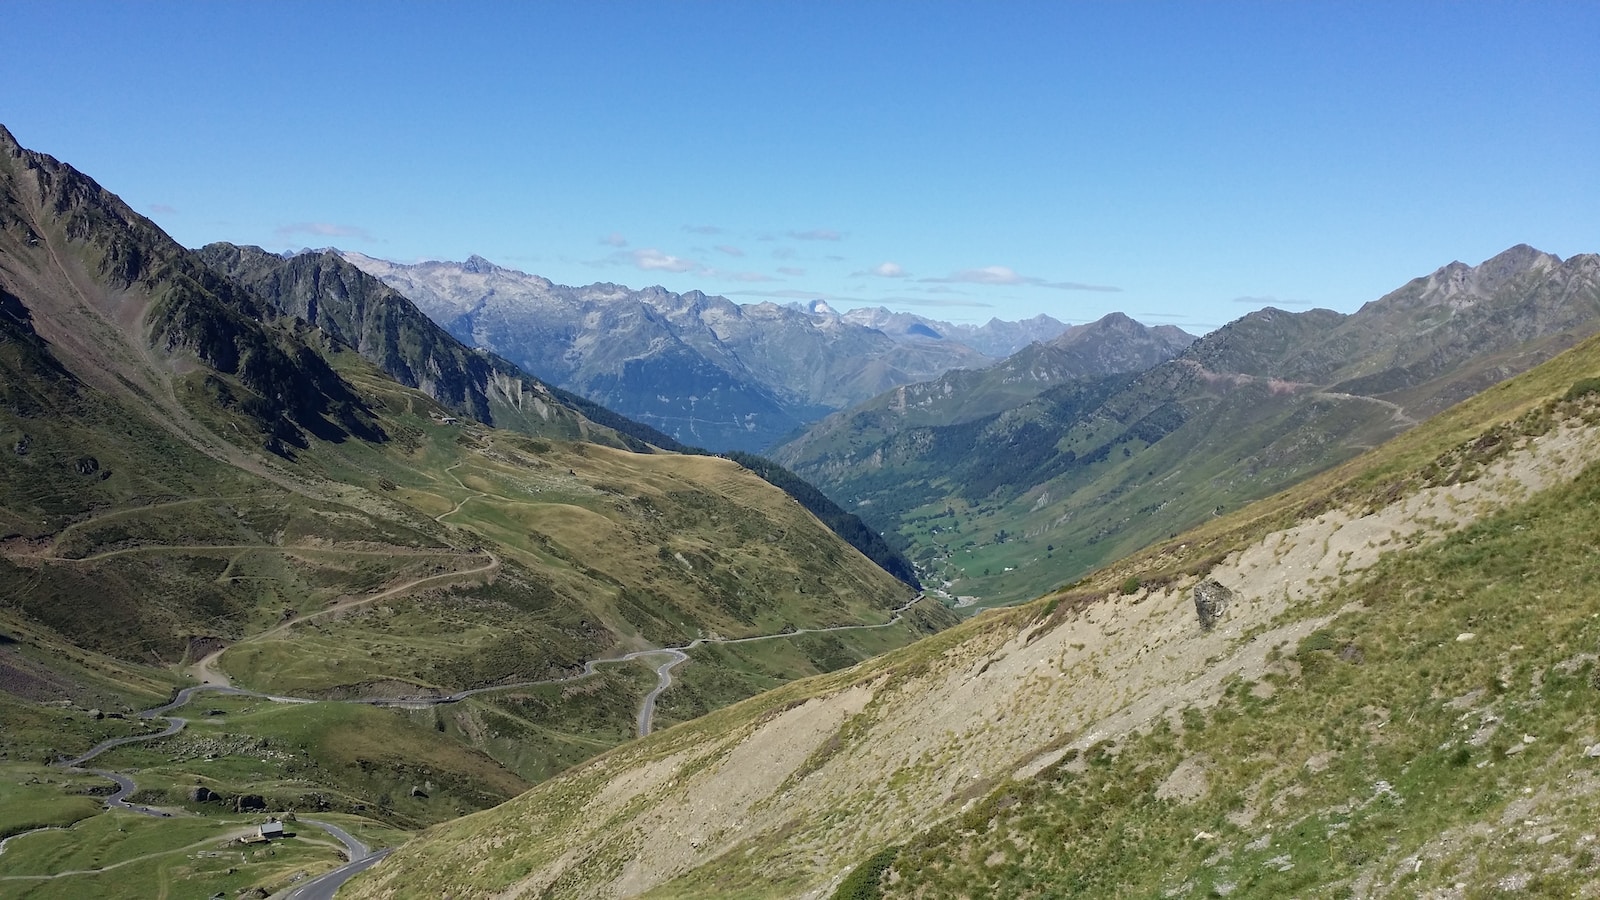 La webcam Tourmalet : une fenêtre sur les Pyrénées